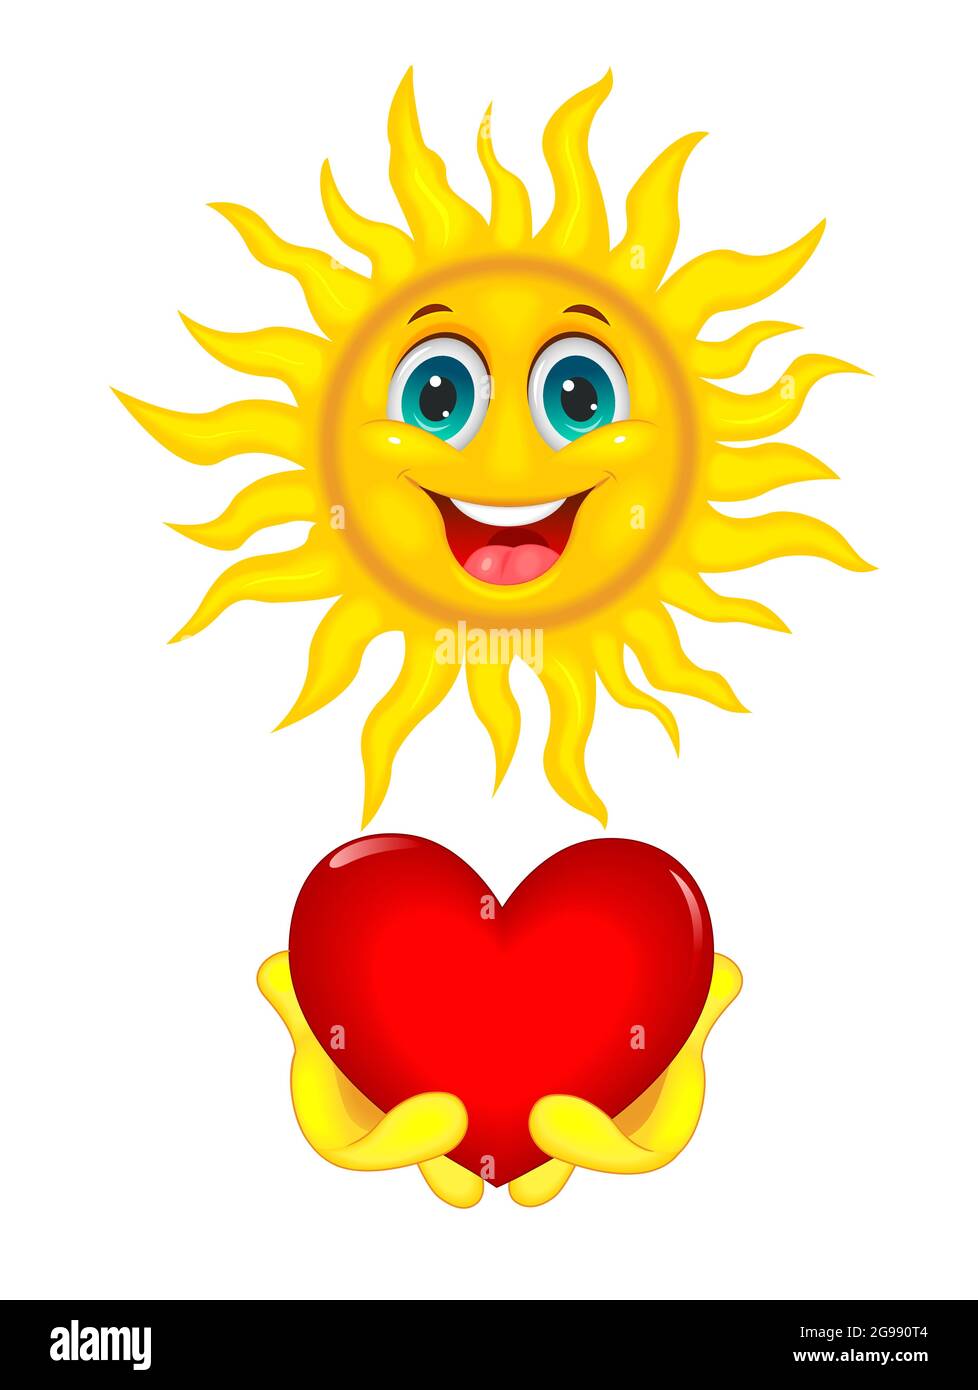 Lächelnde Cartoon-Sonne auf weißem Hintergrund. Die Sonne hält ein rotes Herz in den Händen. Stock Vektor